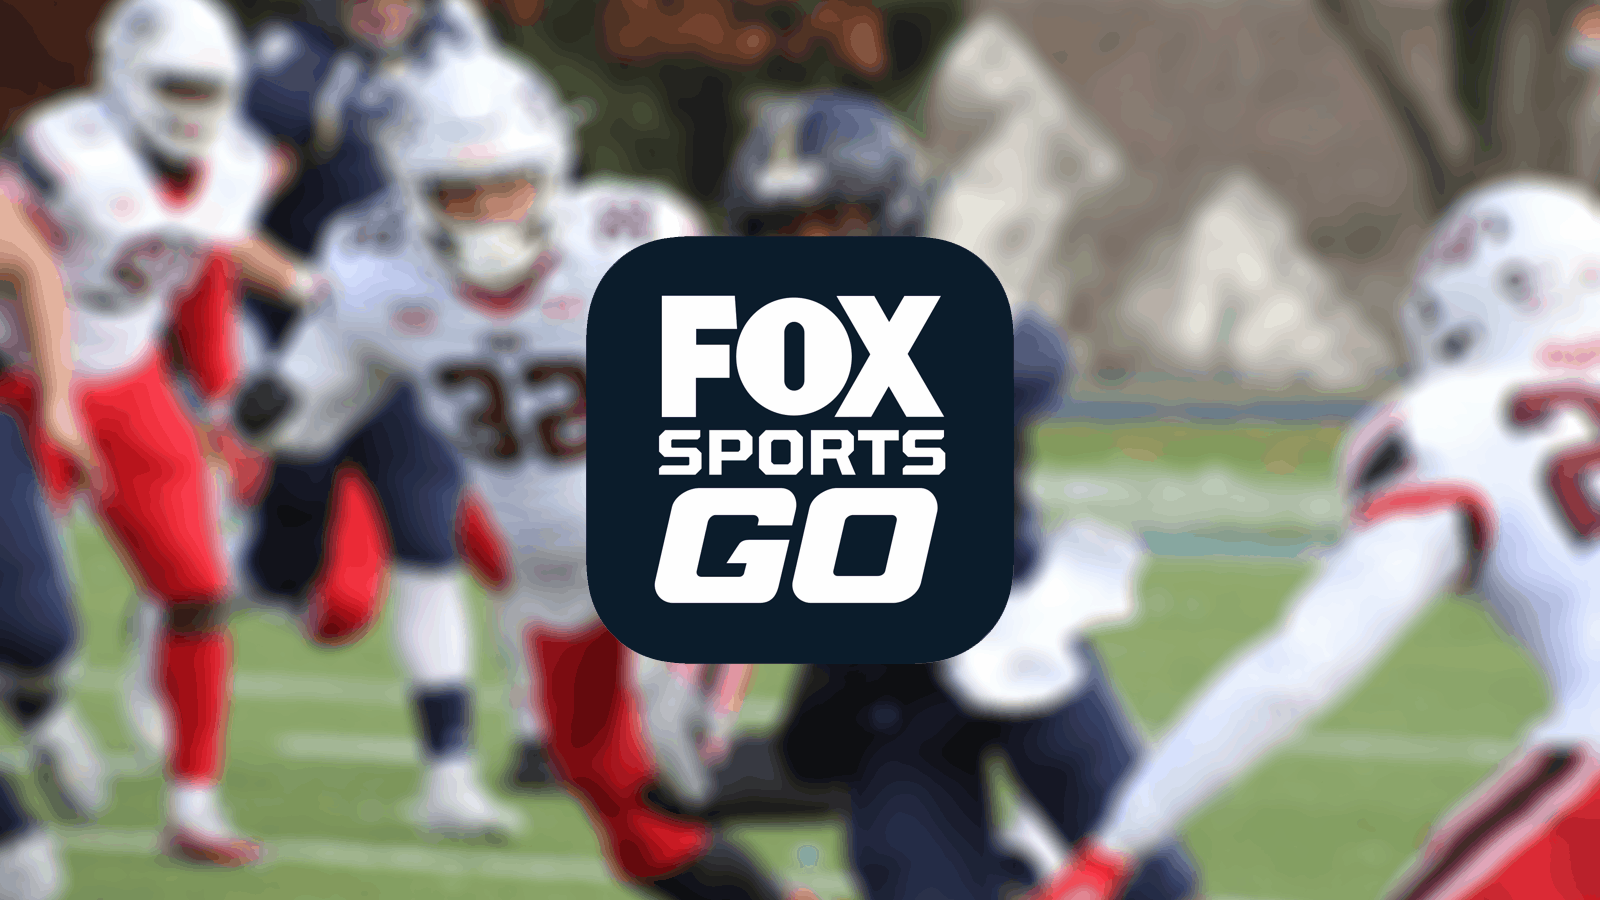 أفضل 5 VPN لـ Fox Sports GO في 2019 - استمتع بالمحتوى الرياضي المباشر وعند الطلب على أي جهاز!